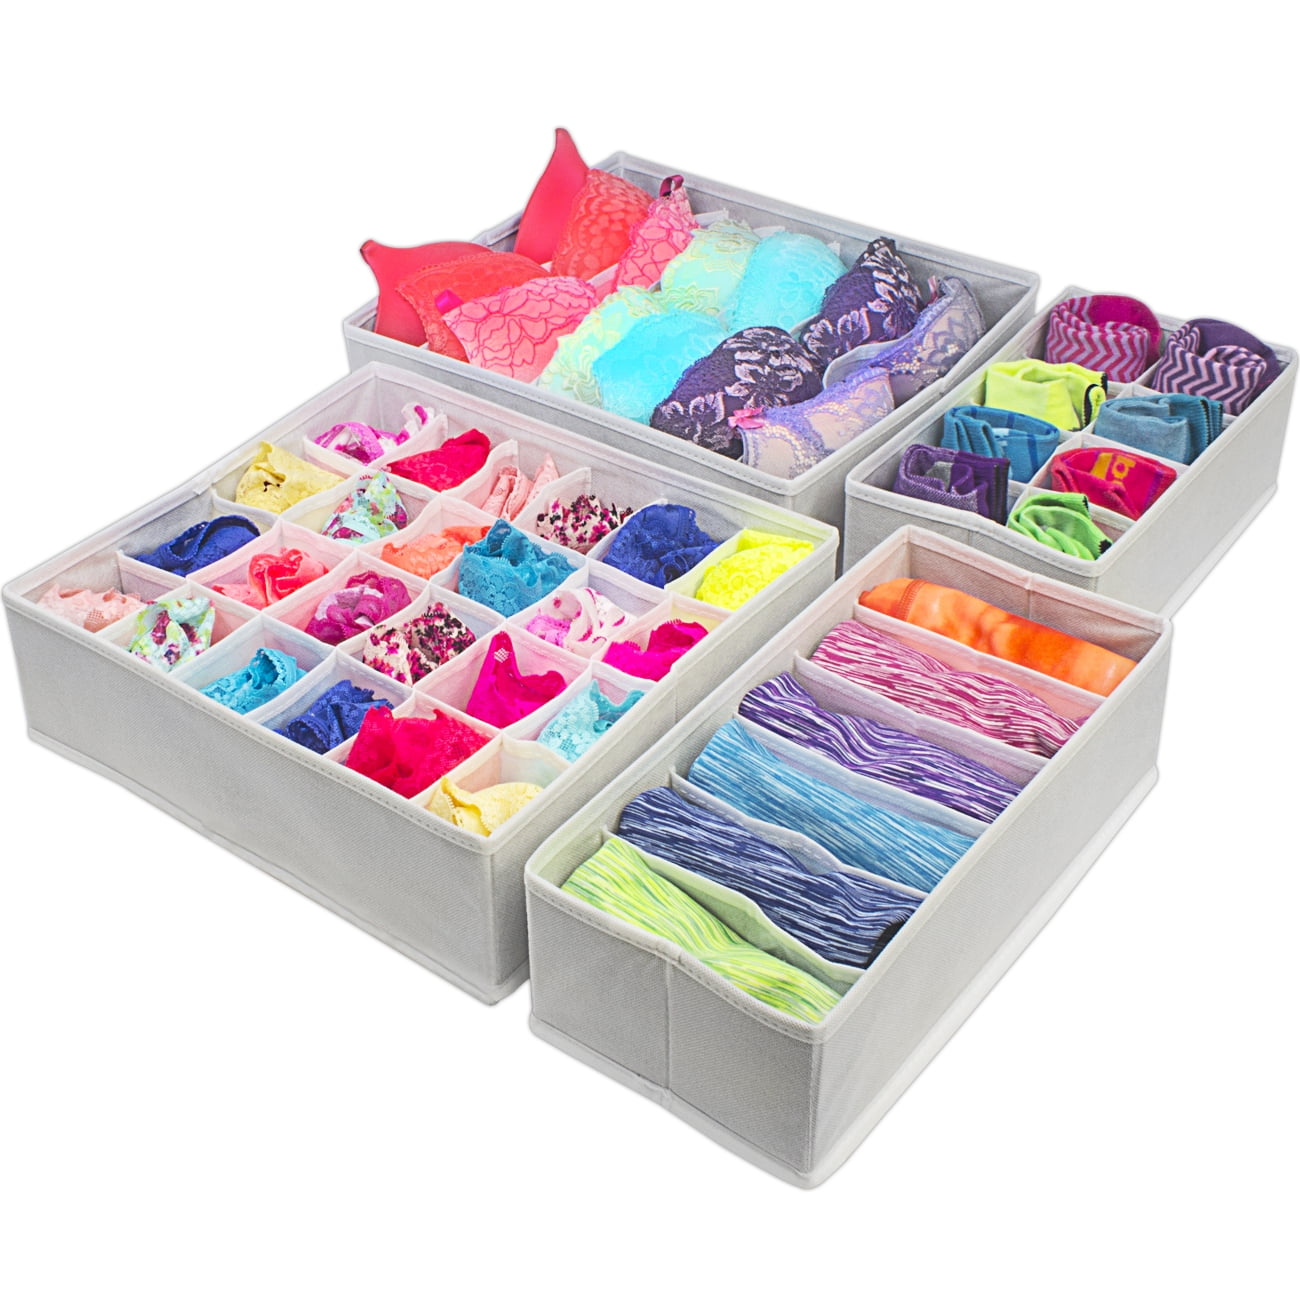 Closet Organizer Box Underwear Clothes Bra Socks Storage Divider Hot Drawer Boxe 